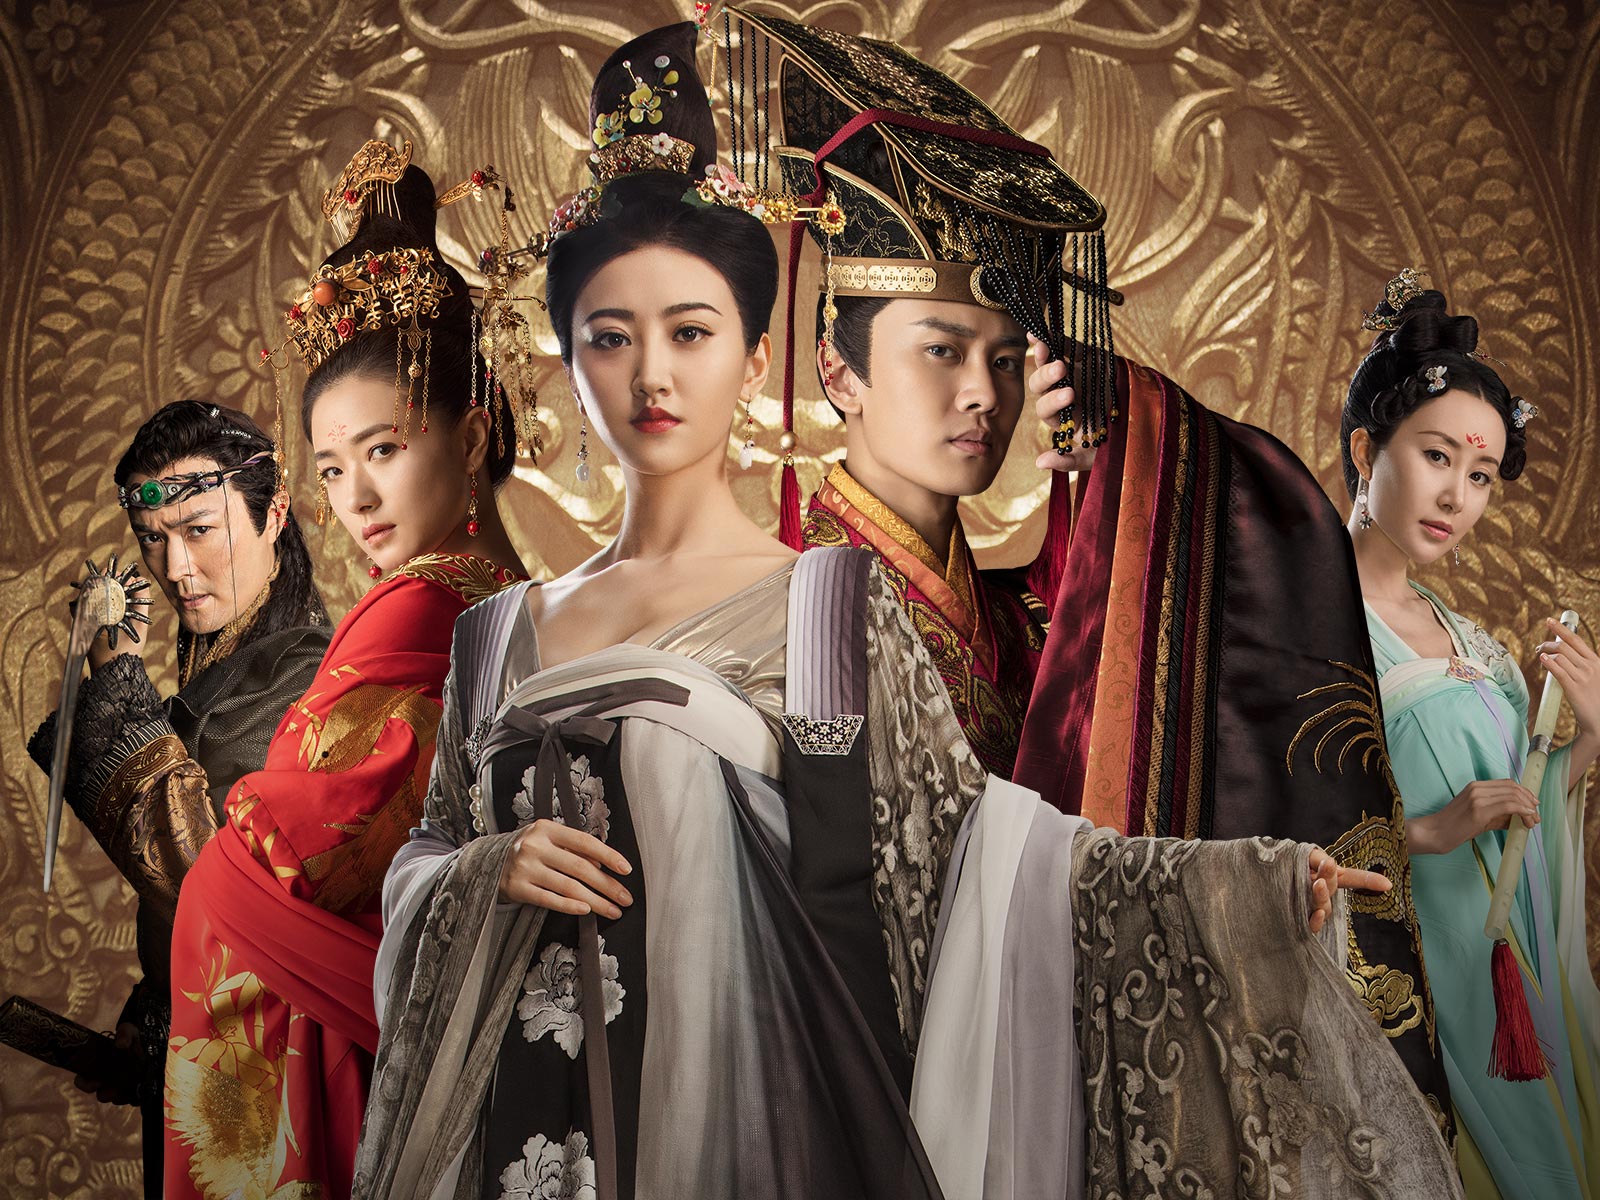 武則天から半世紀―新たな宮廷愛憎劇が幕をあける 中国歴史ドラマ『麗王